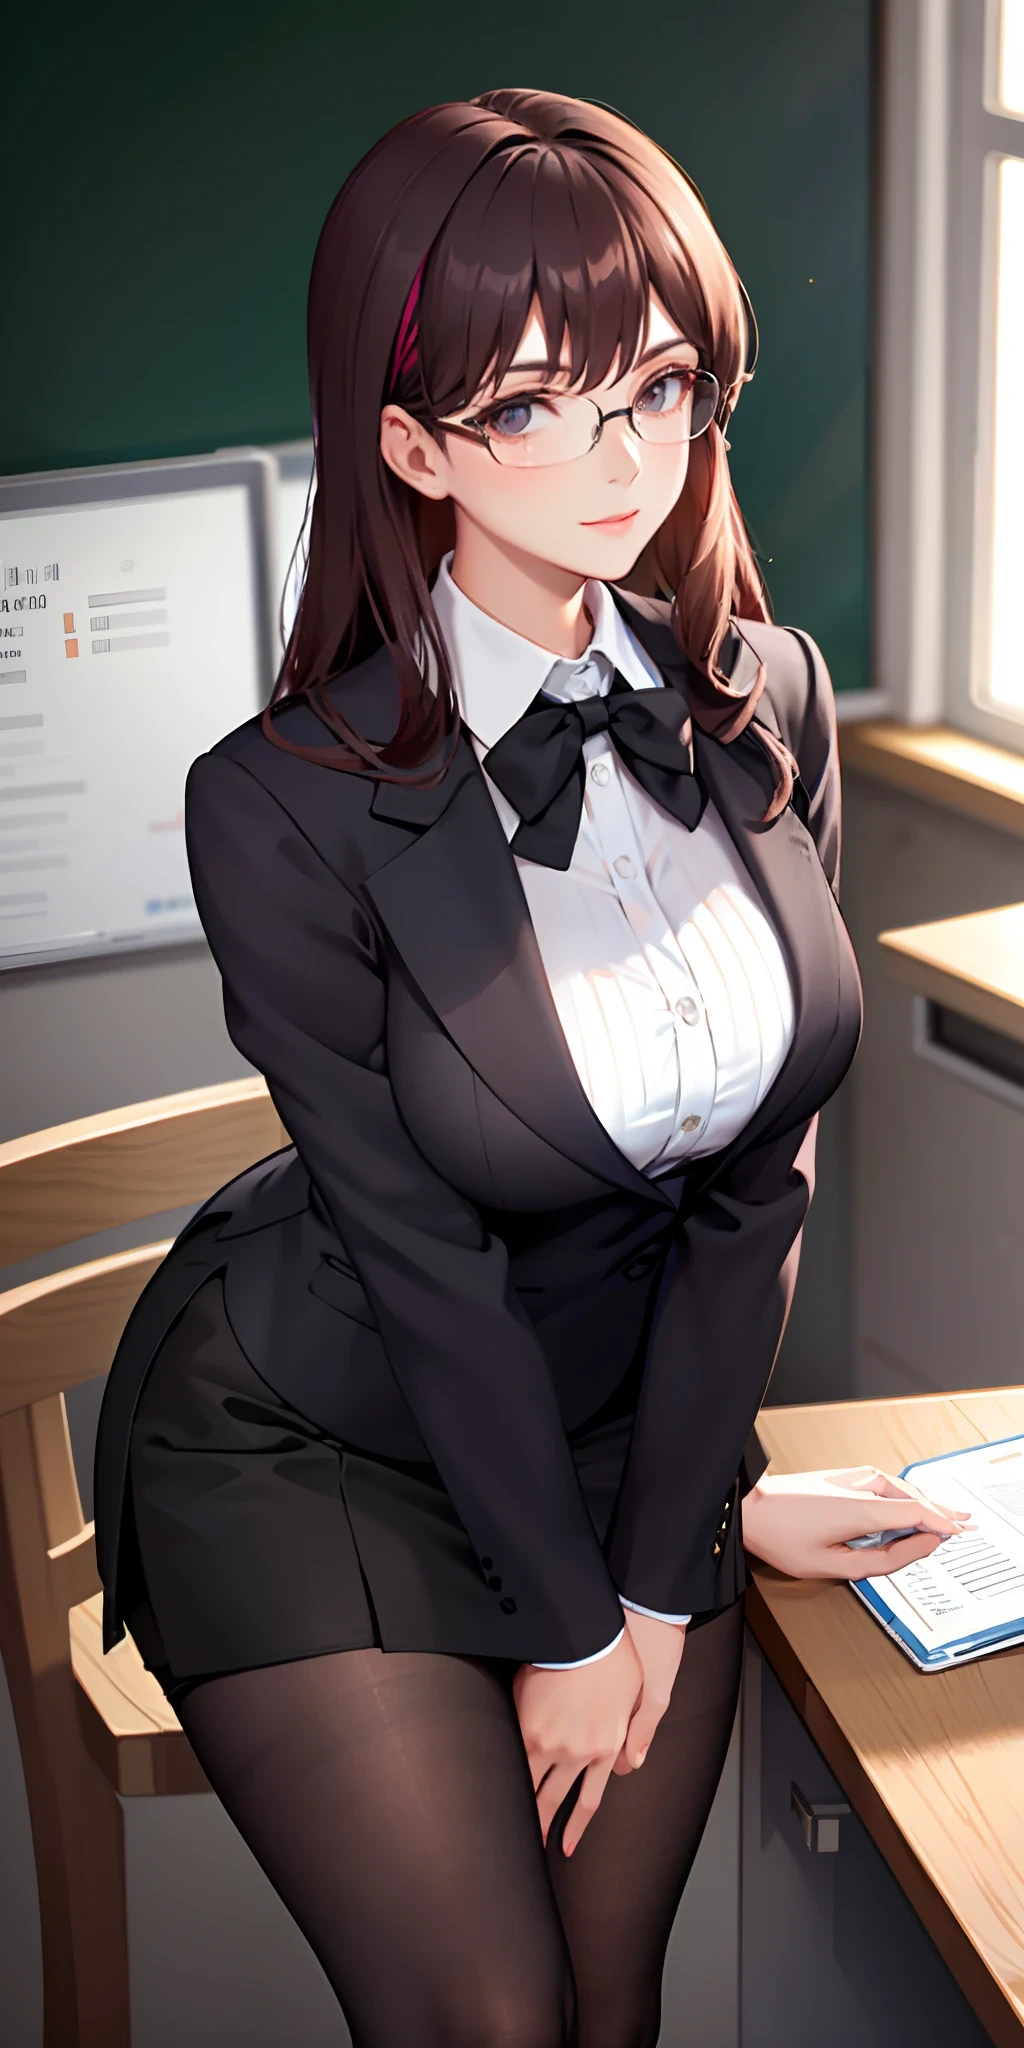 Uma professora elegante e sofisticada usando óculos se veste de maneira divertida como uma senhora de escritório com uma saia curta e meias pretas, revelando seu amplo seio e